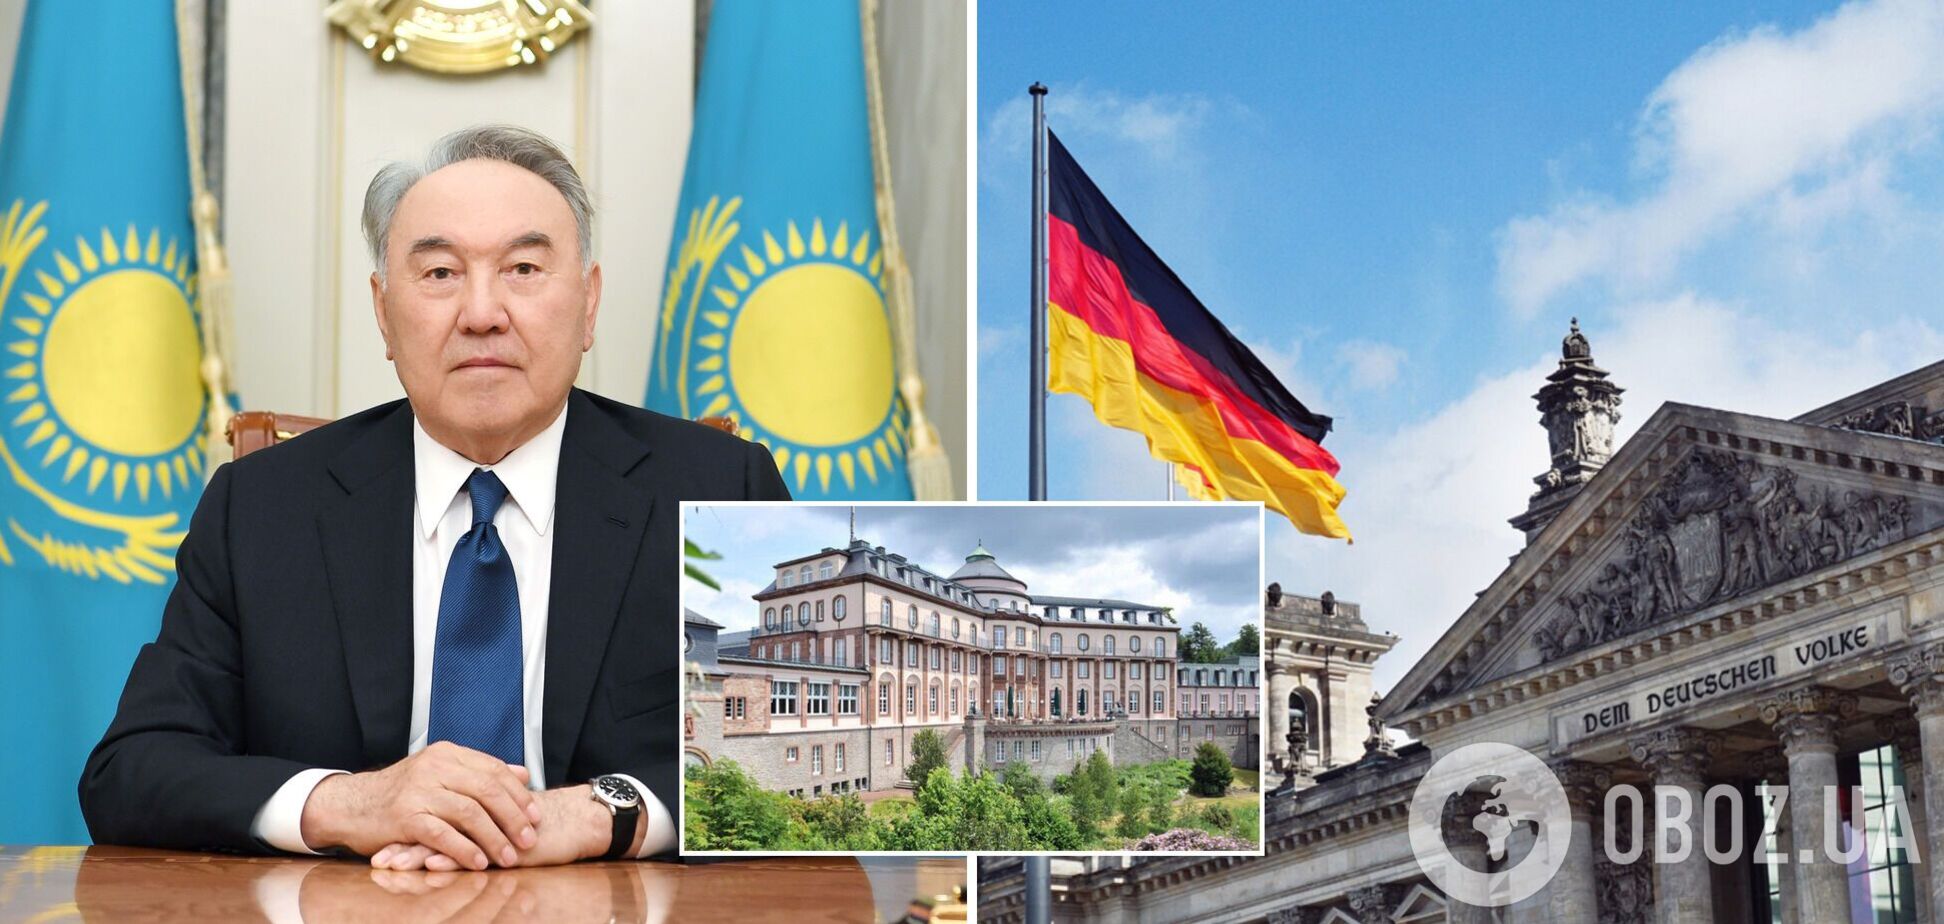 В Германии заговорили о конфискации элитной недвижимости Назарбаева. Все детали скандала